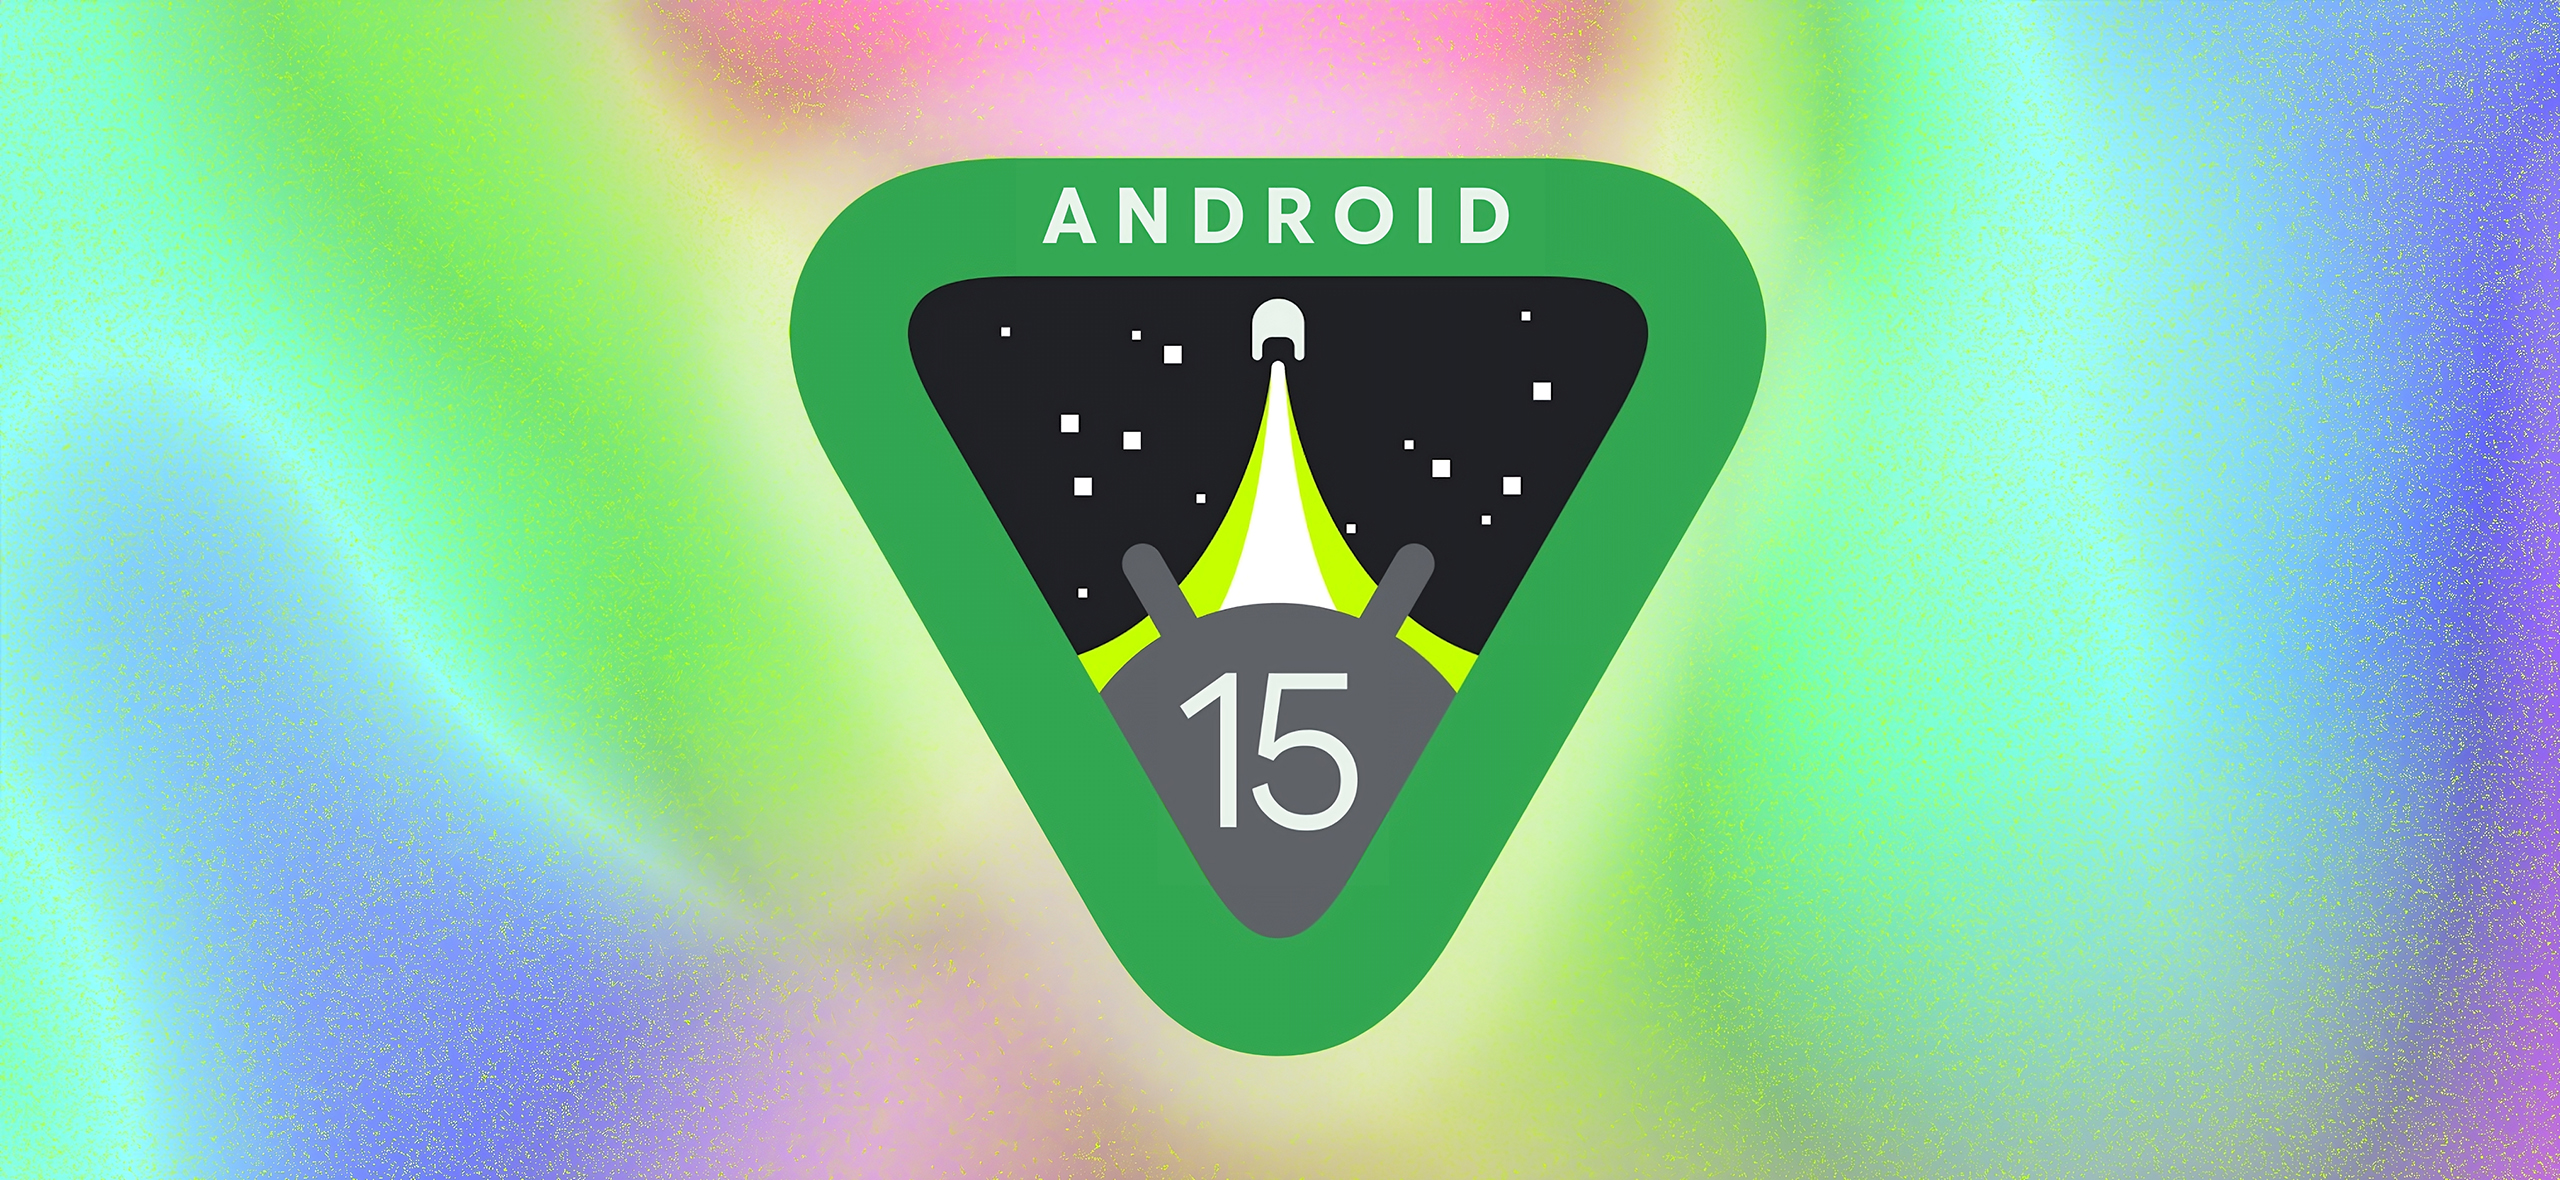 Вышла тестовая версия Android 15: что нового и какие смартфоны получат обновление